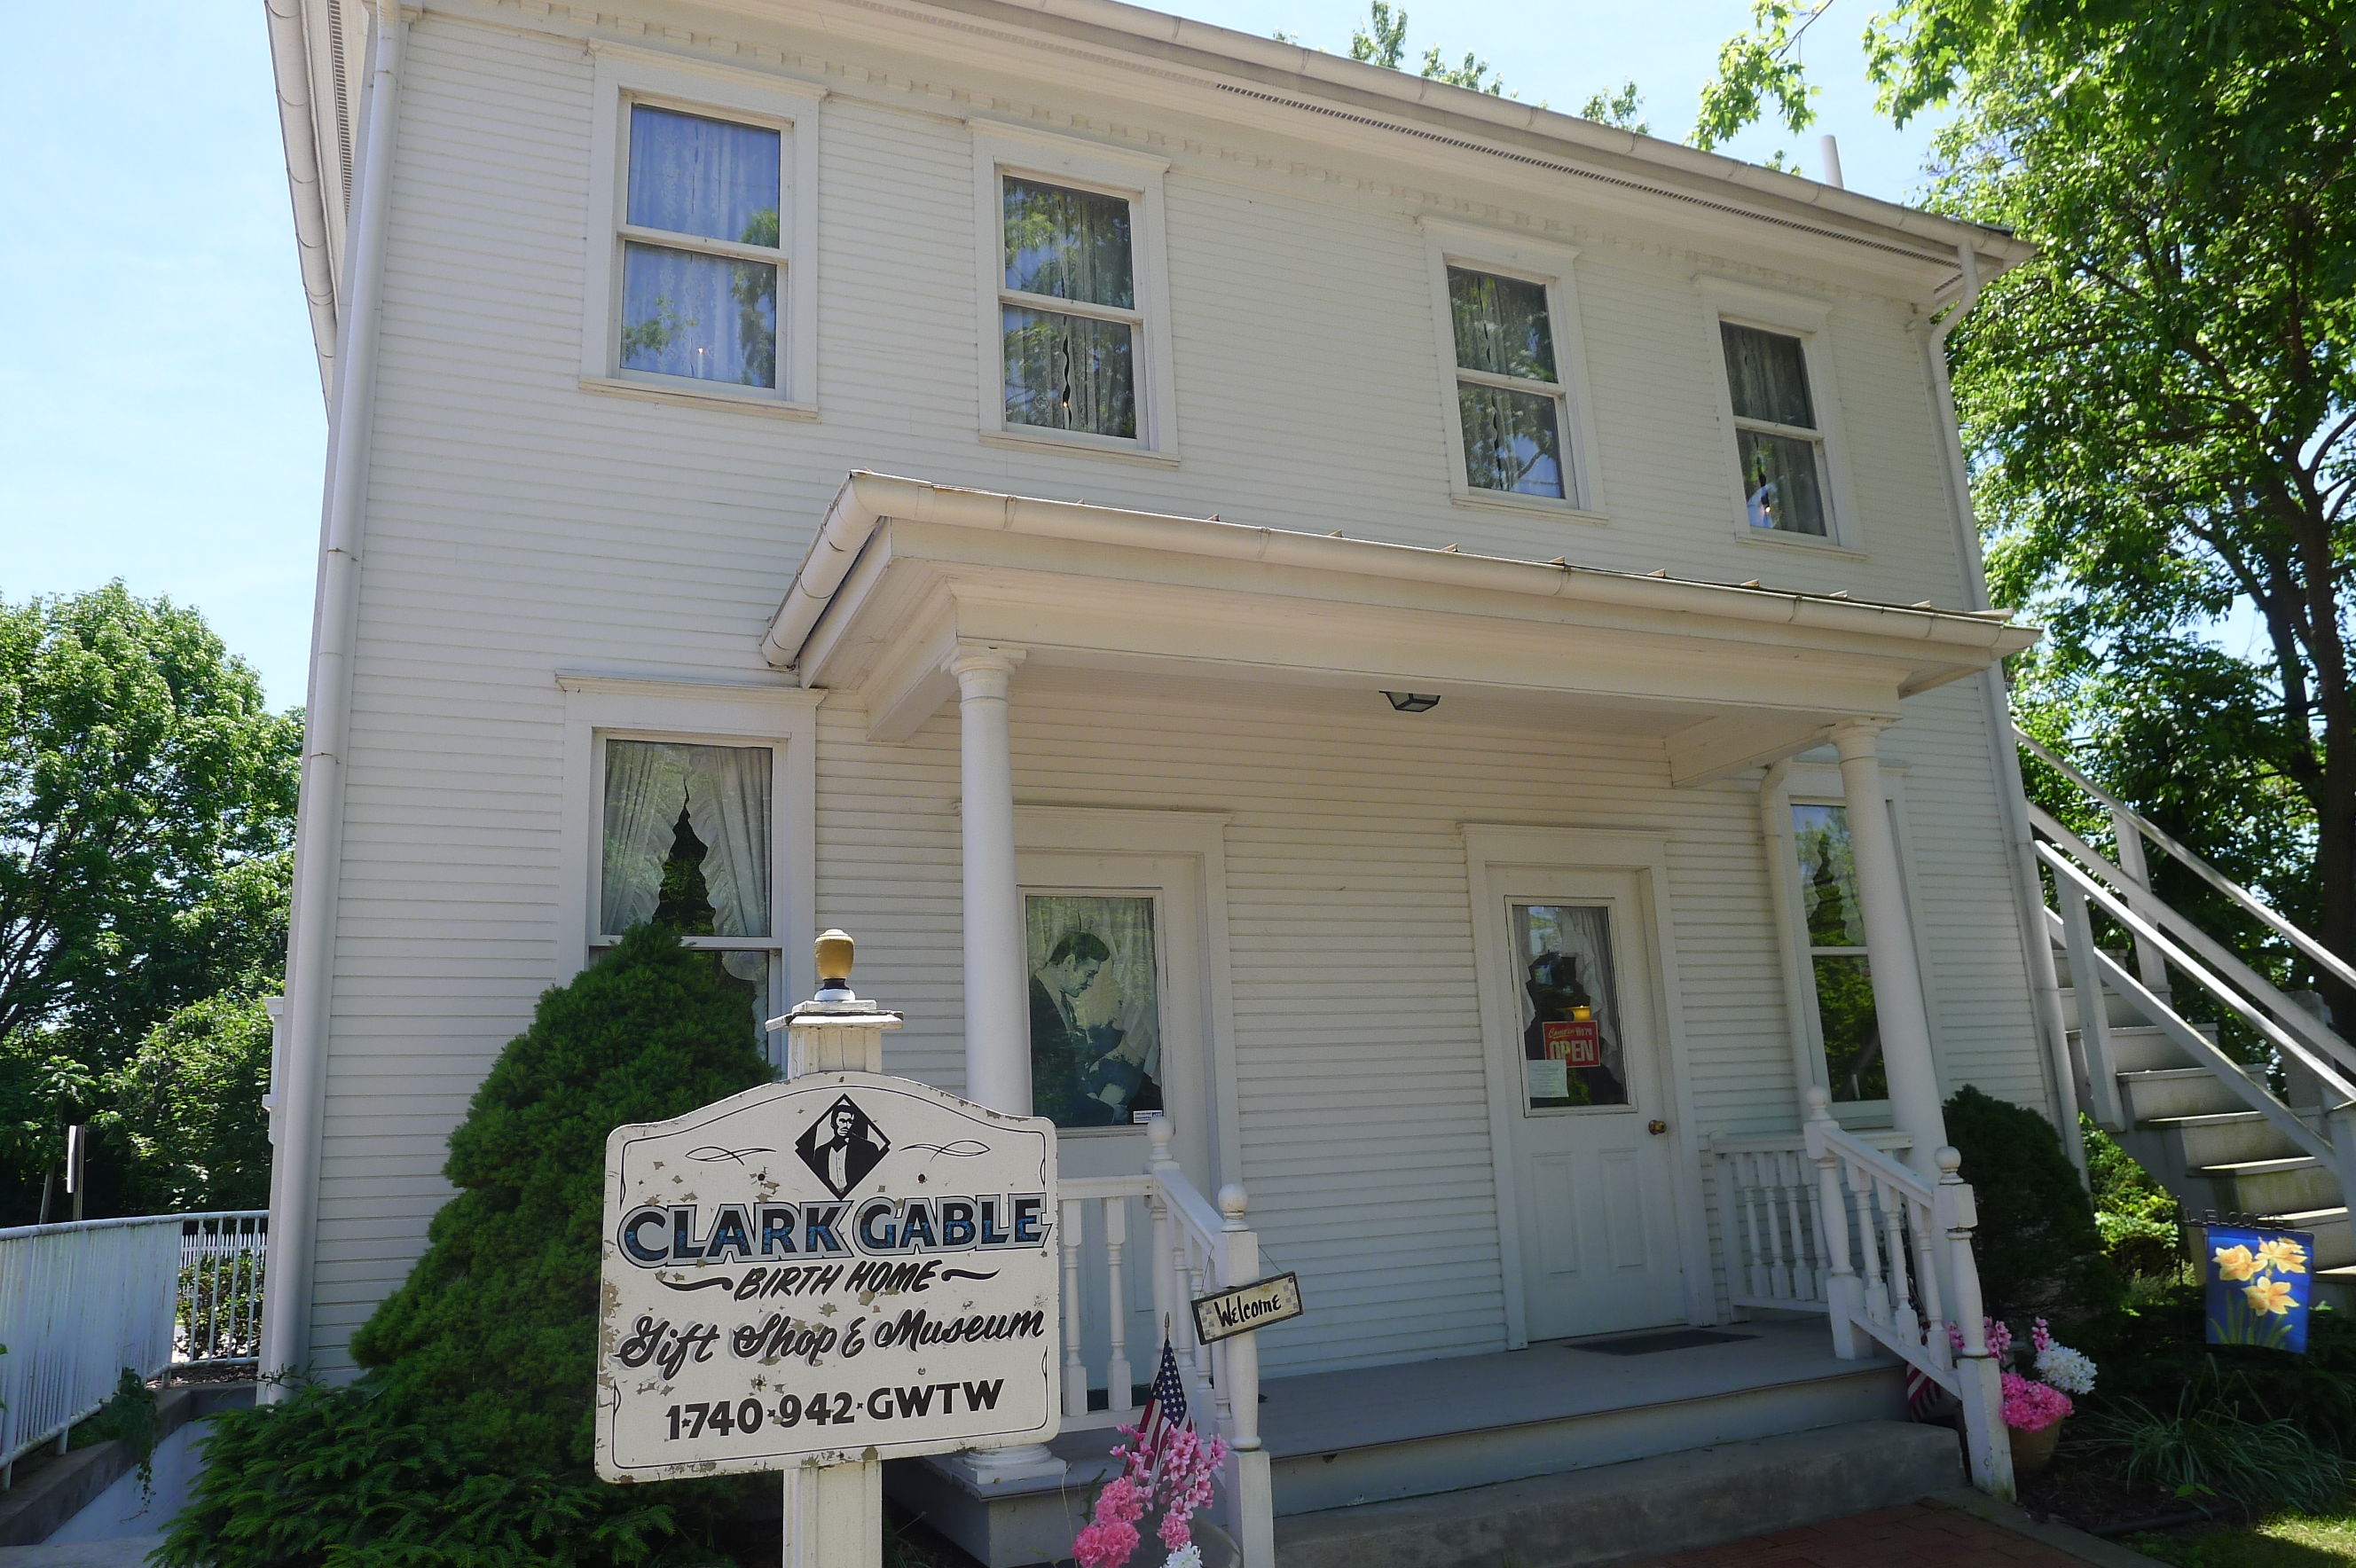 Maison natale de Clark Gable